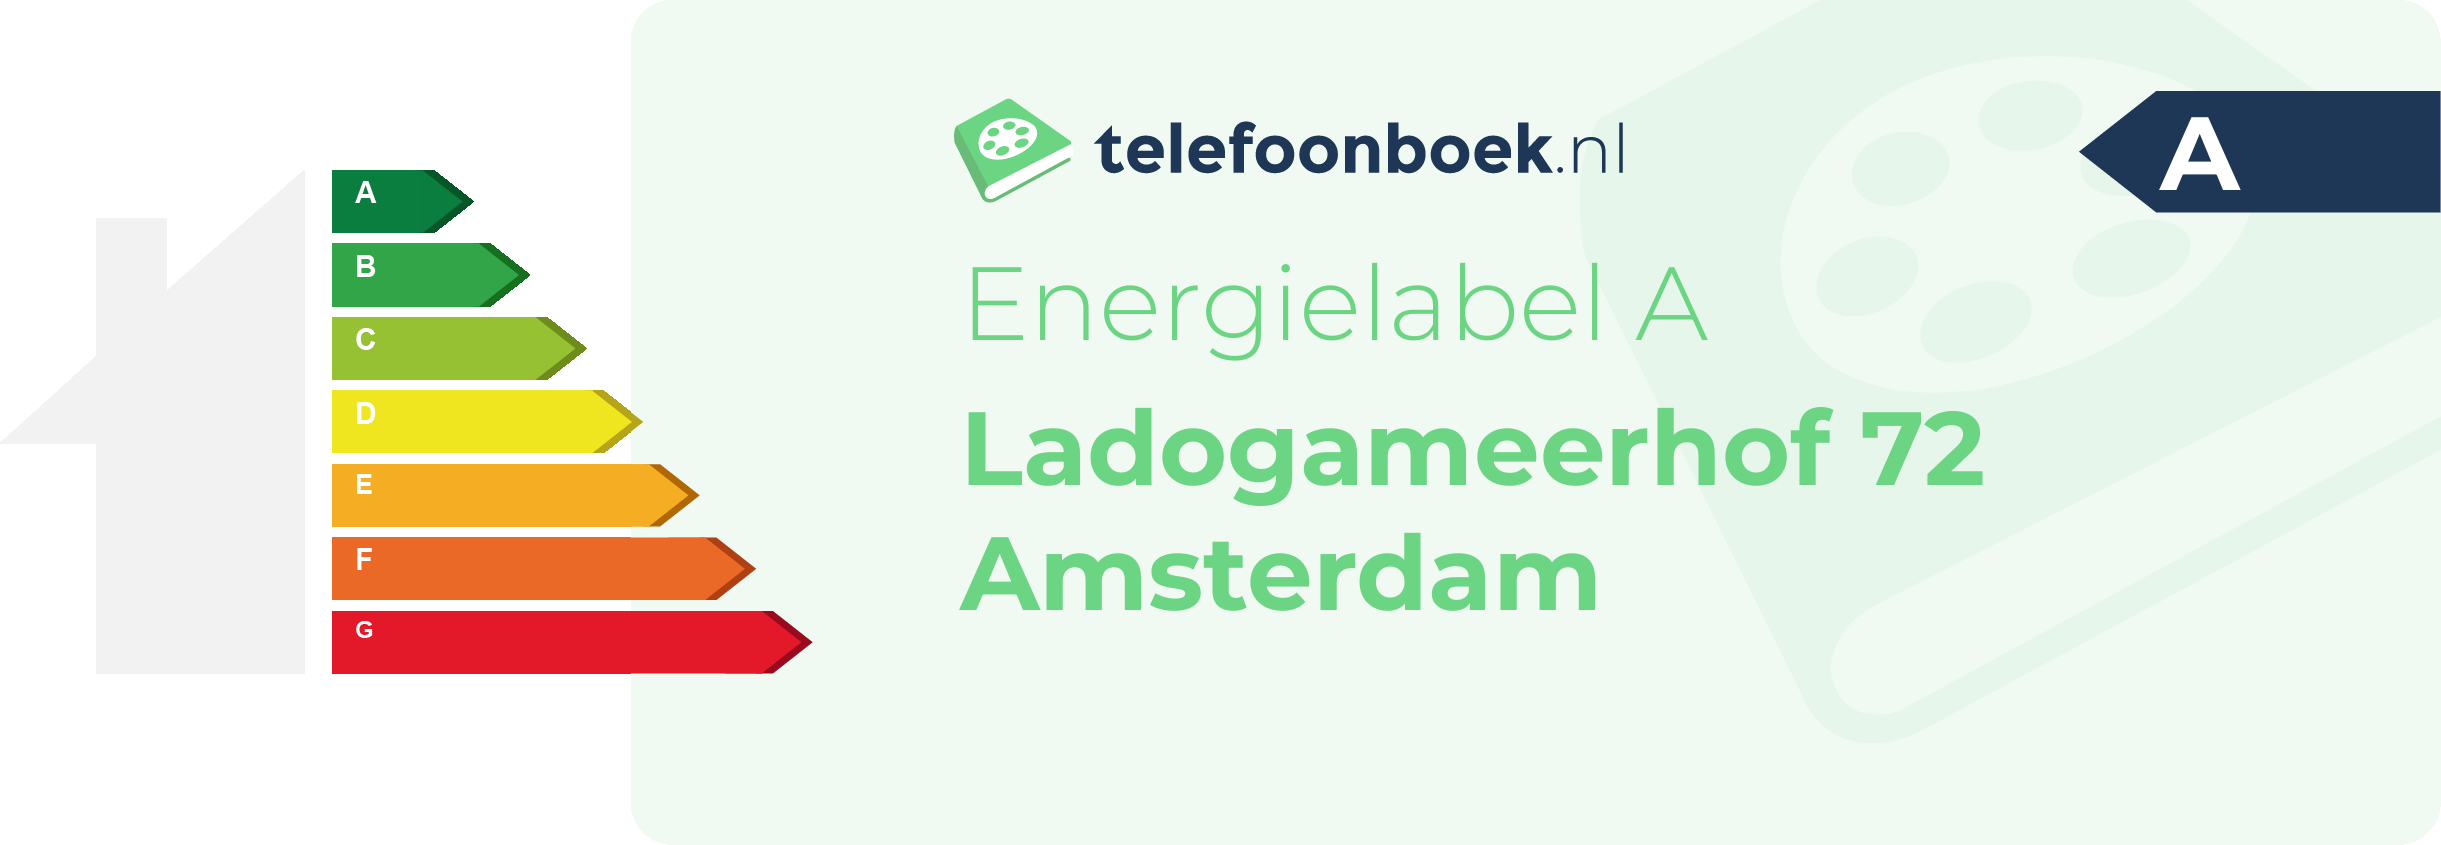 Energielabel Ladogameerhof 72 Amsterdam